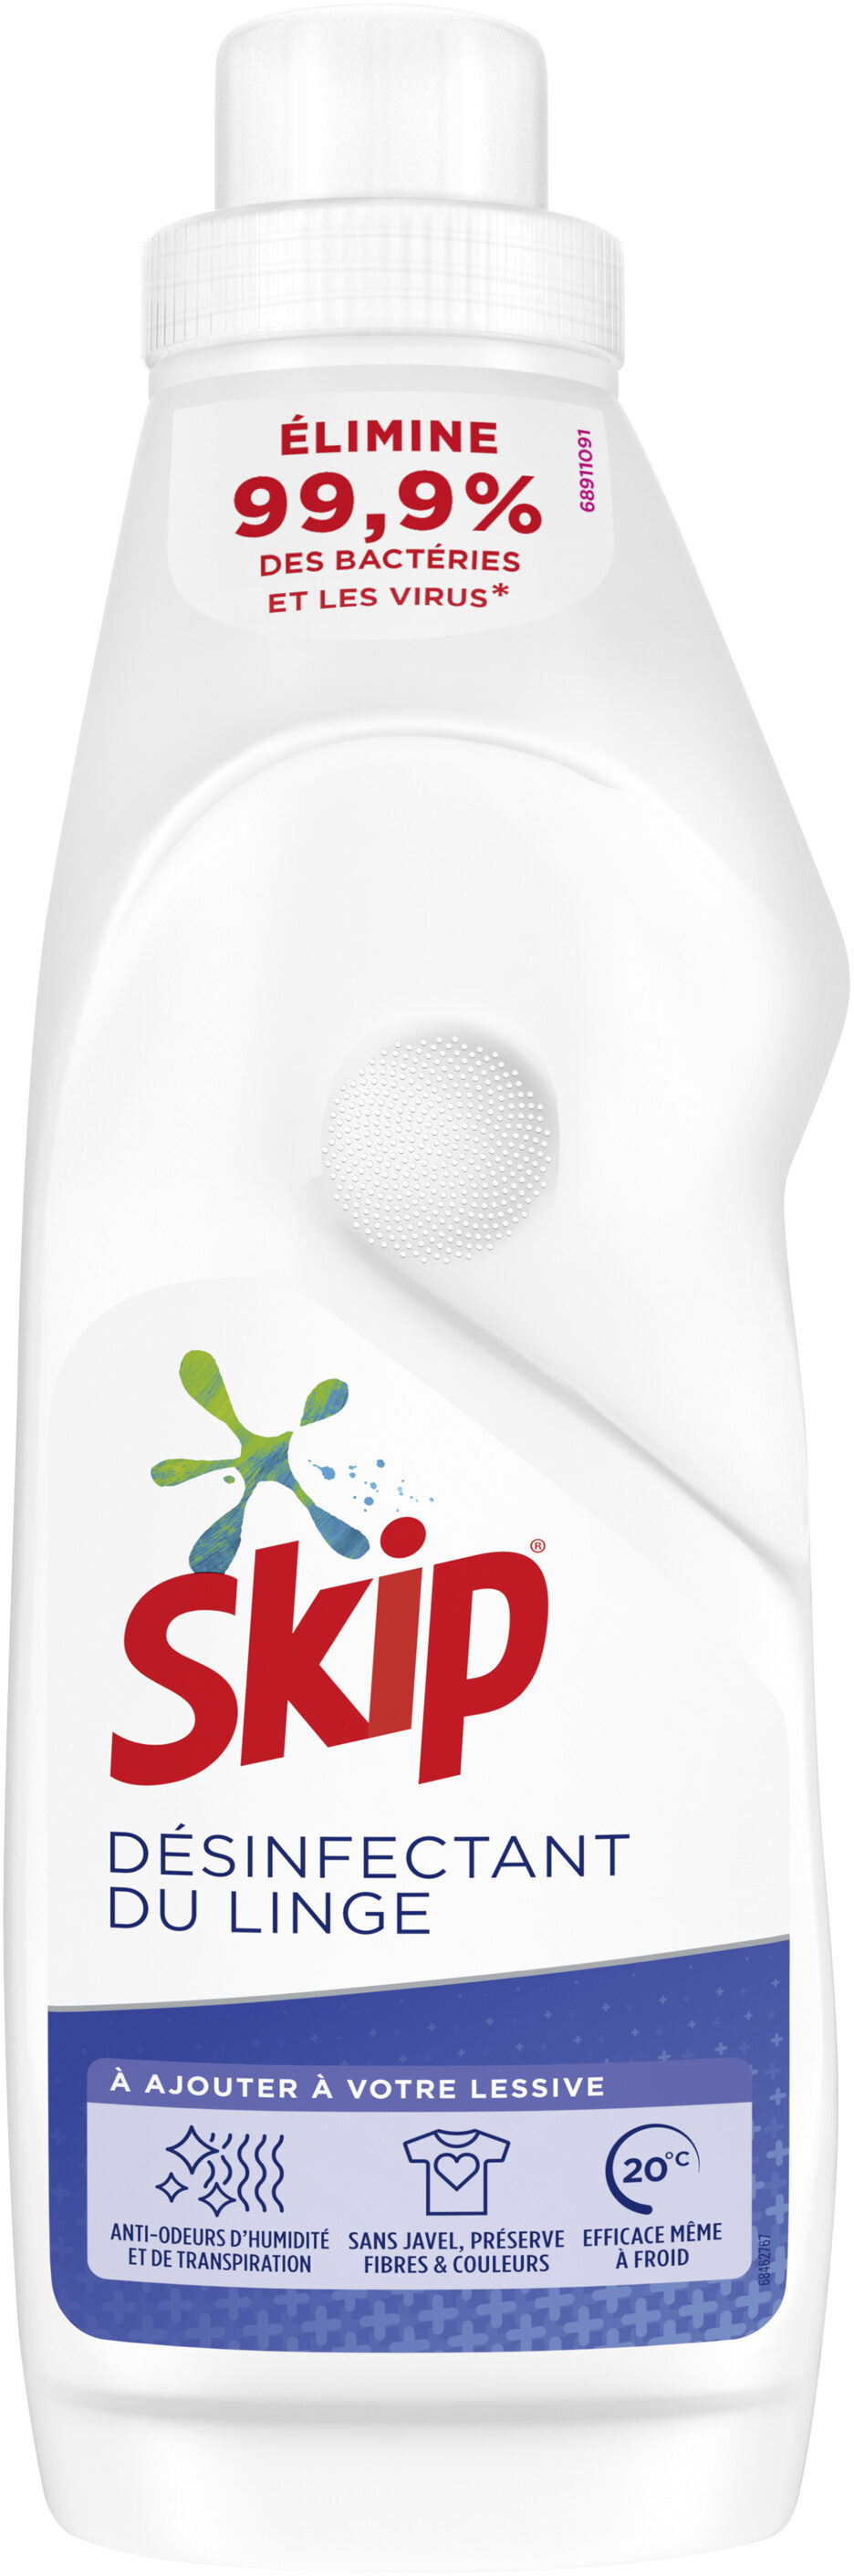 Skip Désinfectant du linge Désinfecte & Anti-Odeurs 1.2l - Product - fr